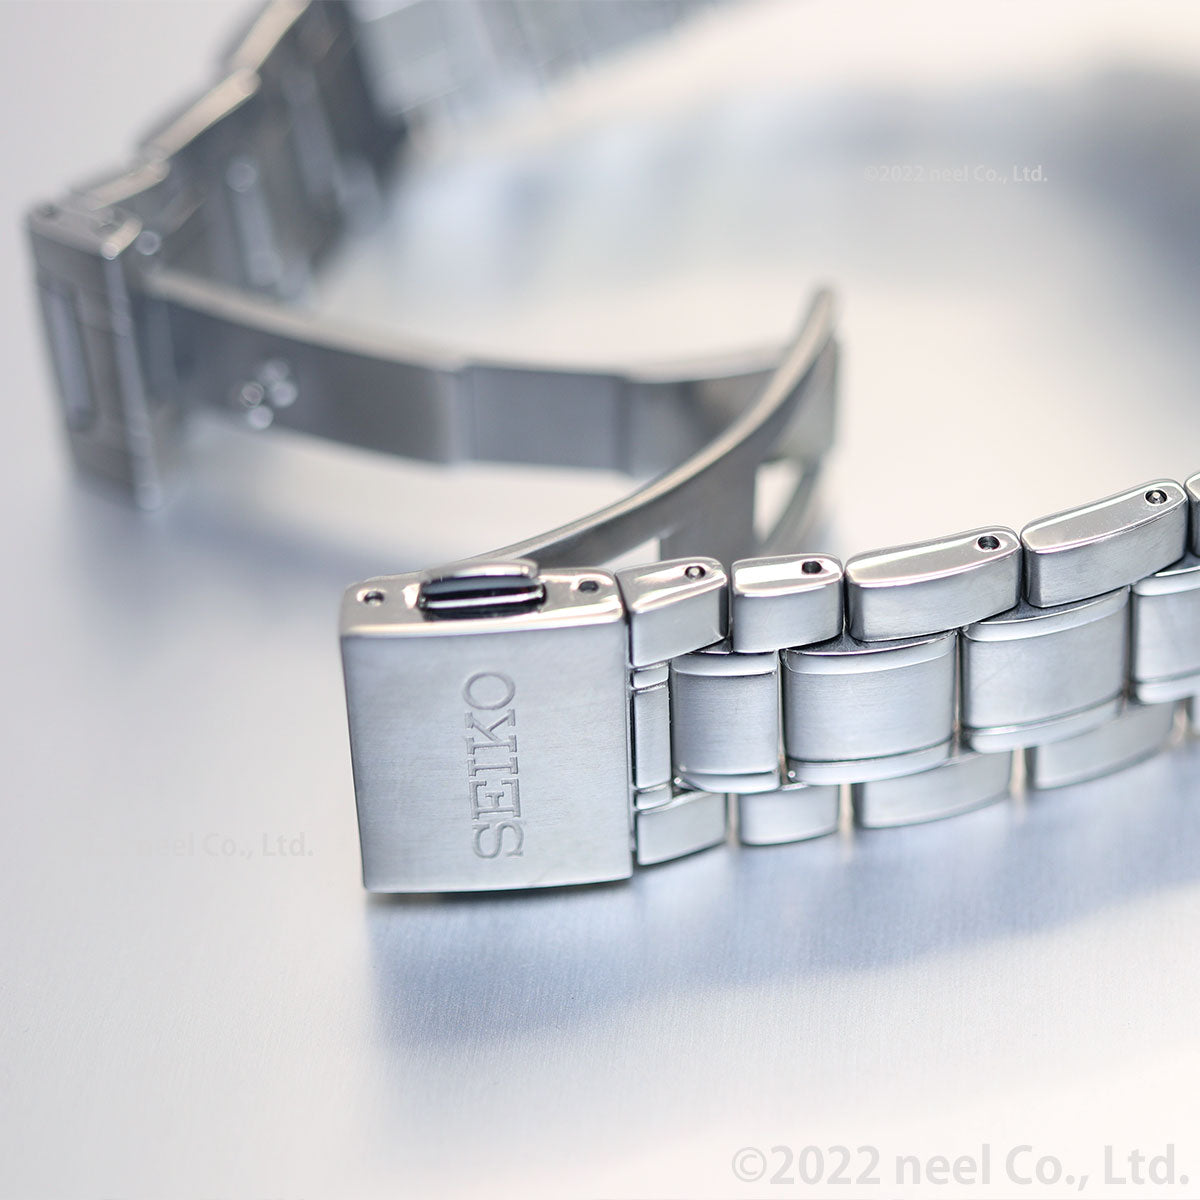 セイコー プレザージュ SEIKO PRESAGE 自動巻き 有田焼ダイヤル SARX095 コアショップ専用 流通限定モデル 腕時計 メンズ プレステージライン